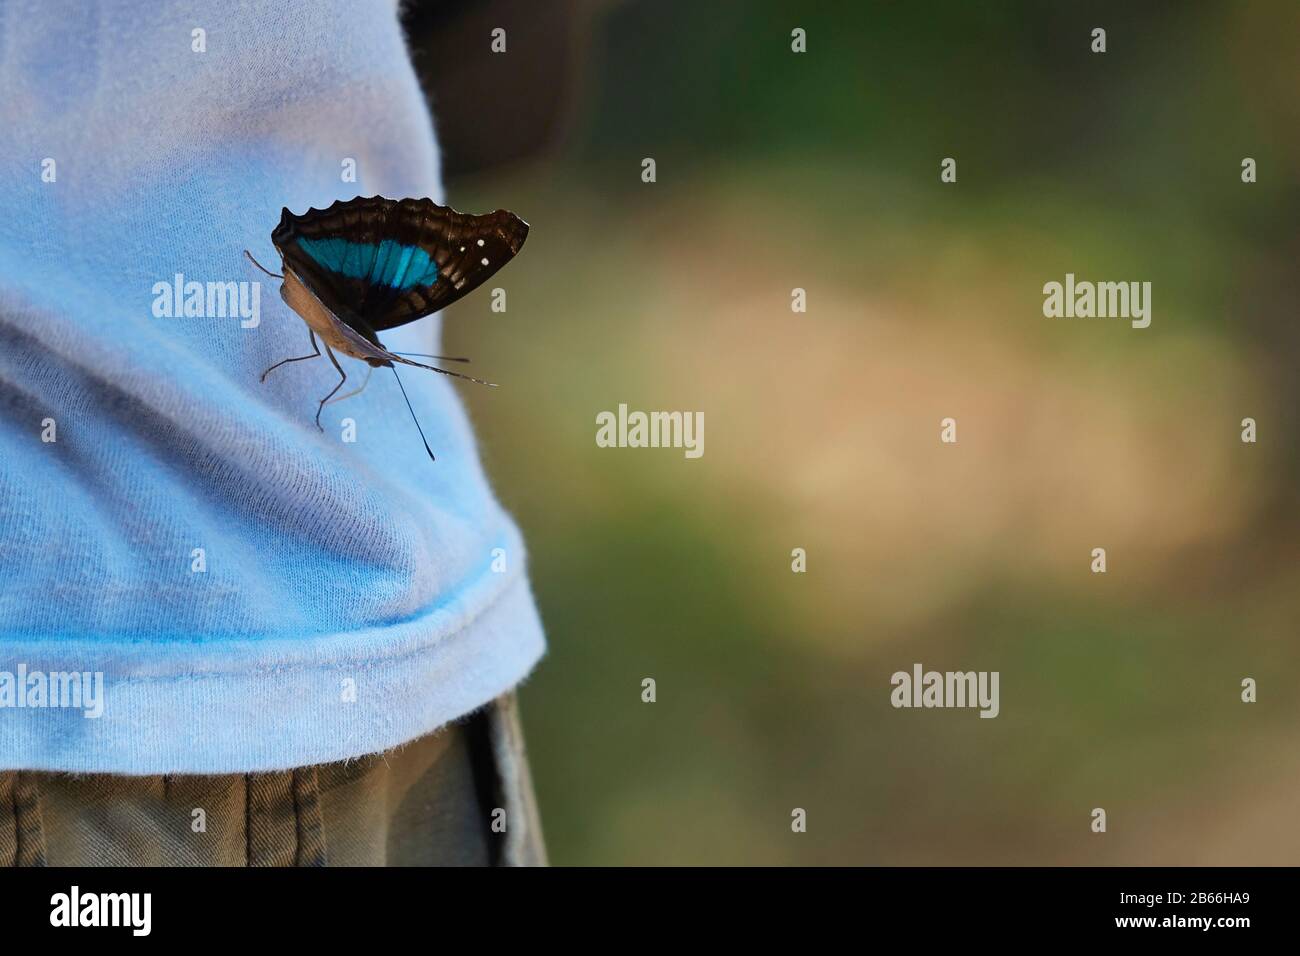 Un papillon bleu reposant sur une personne. Martin Garcia Island, Argentine. Banque D'Images